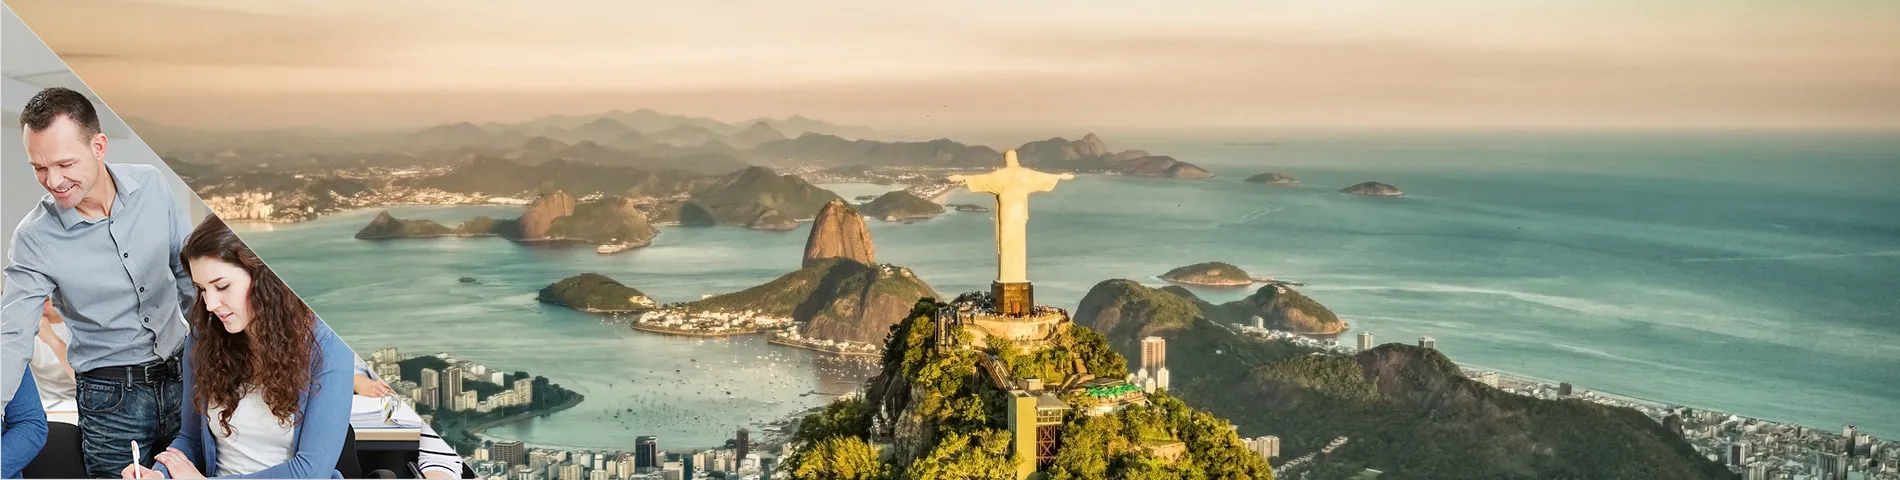 Rio de Janeiro - Combi: Skupina+Indiv